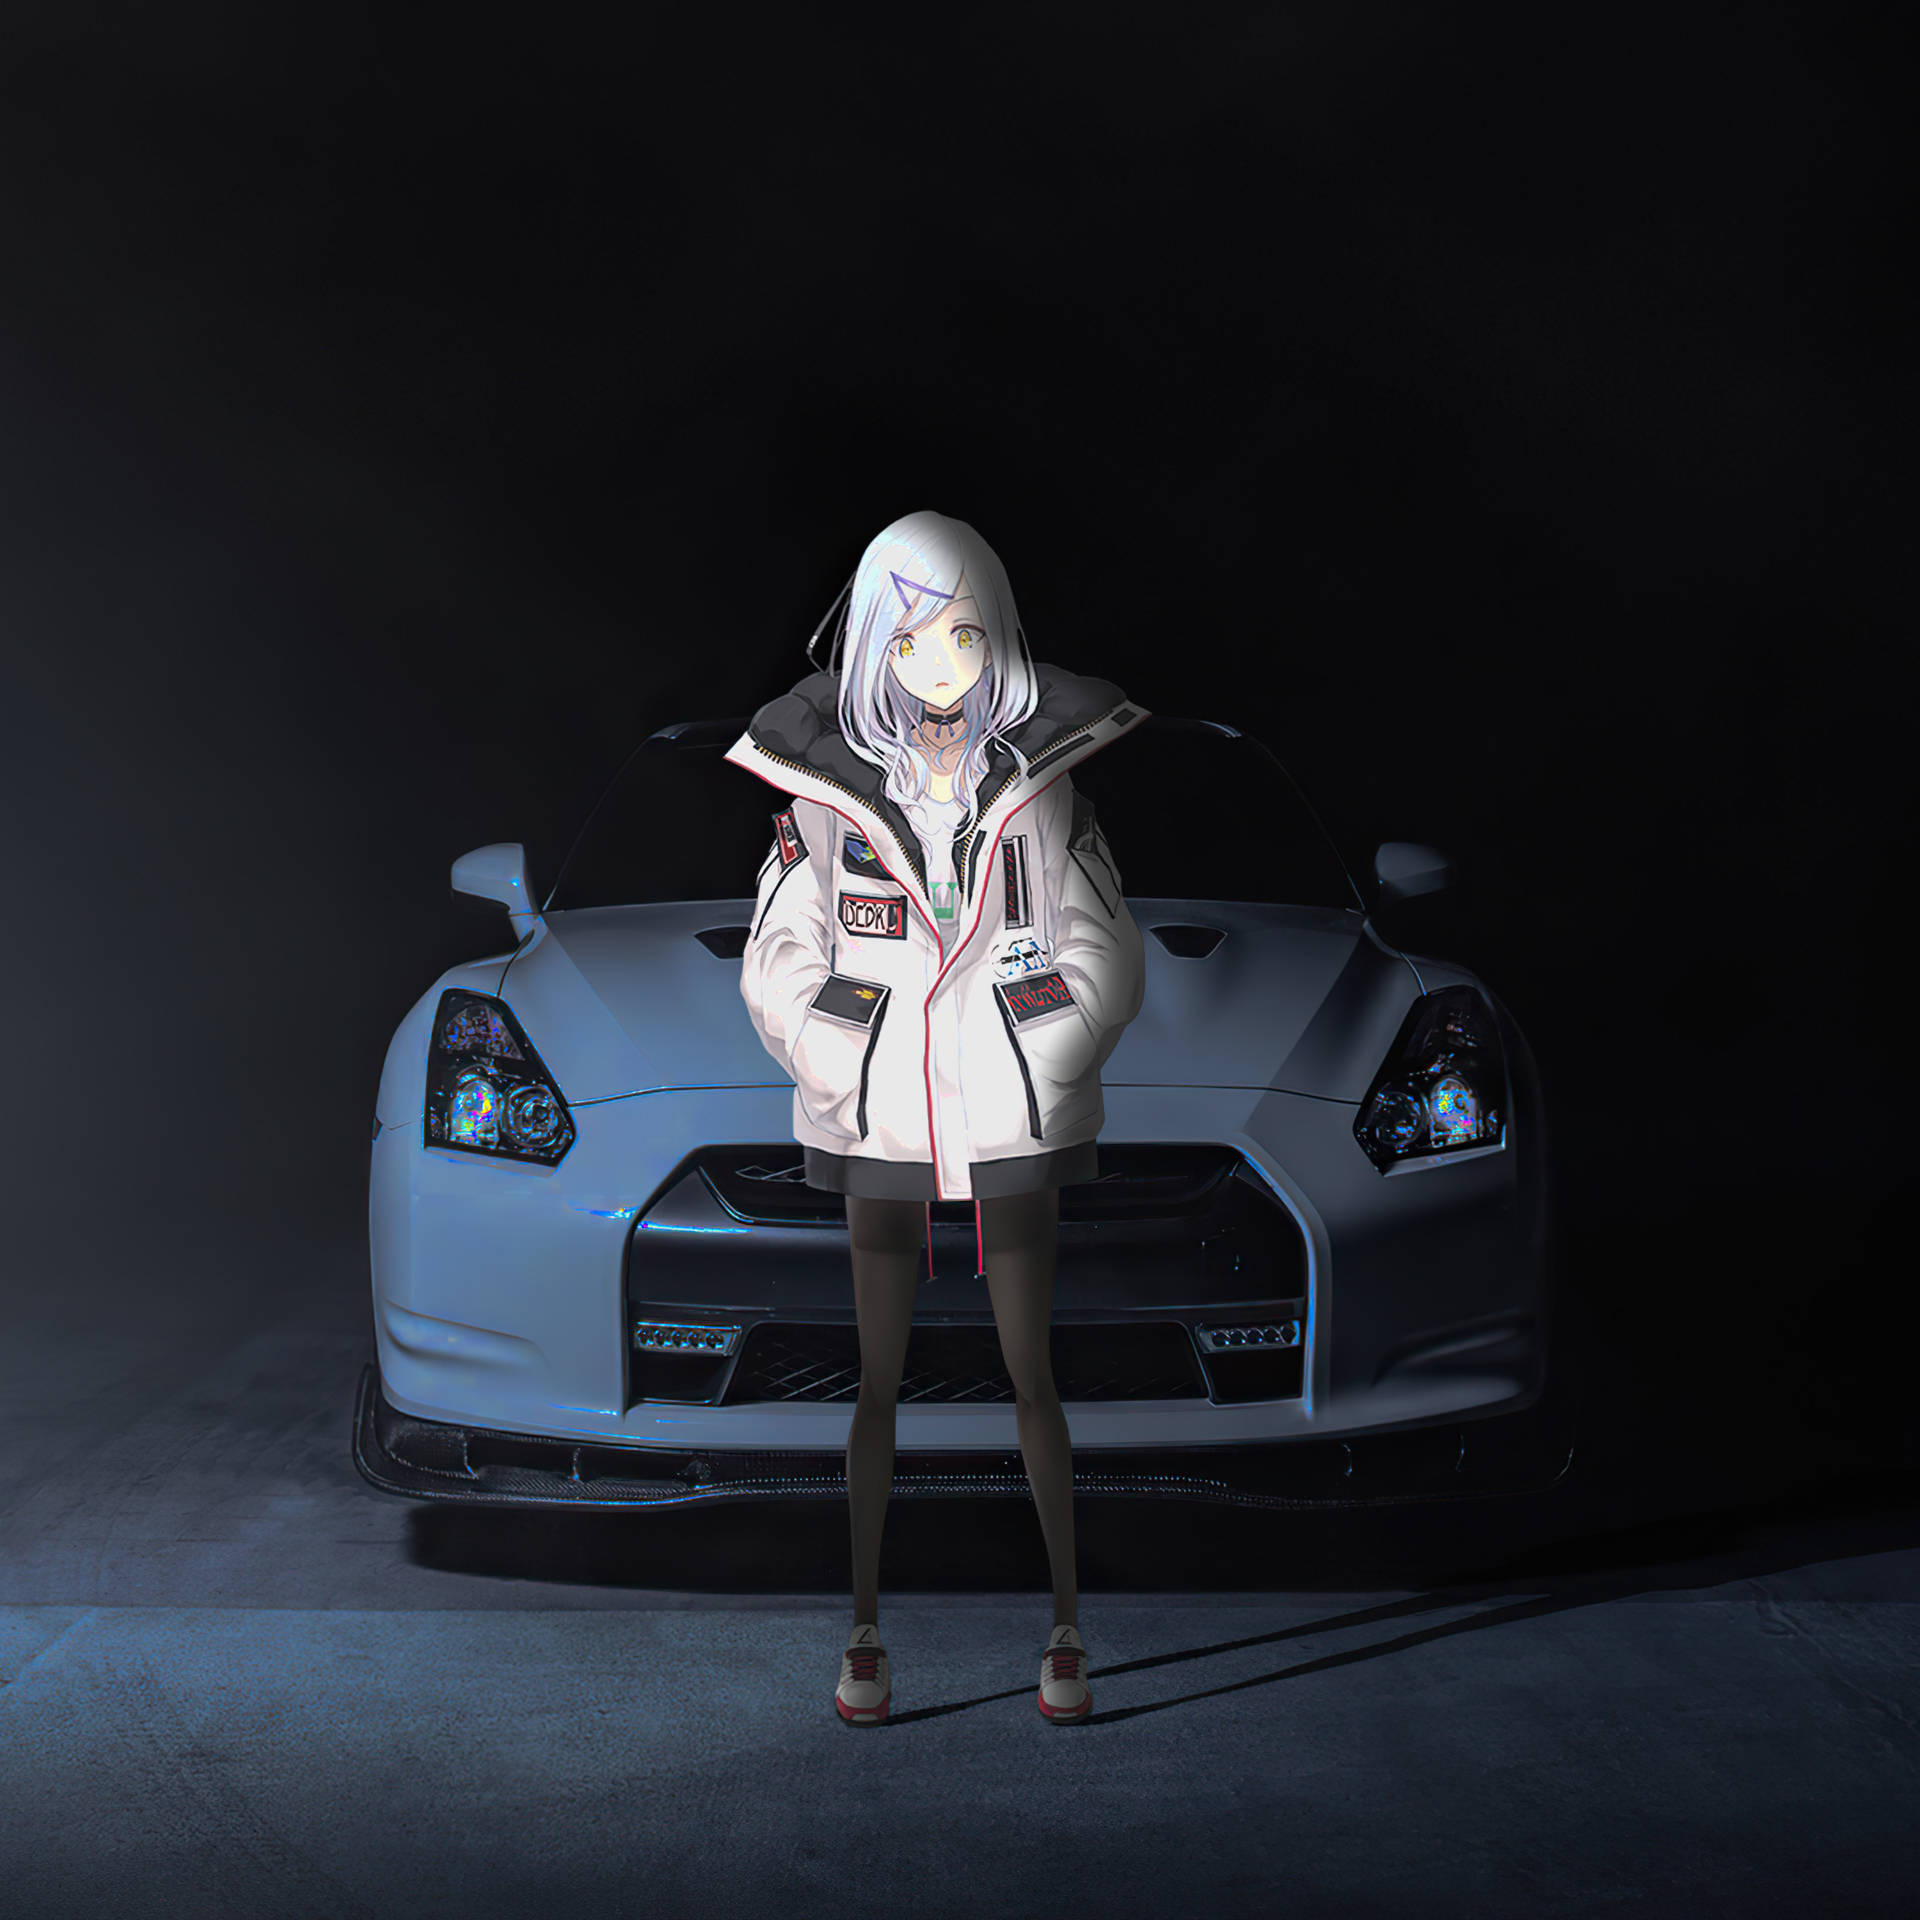 Anime Ipad Girl With Car